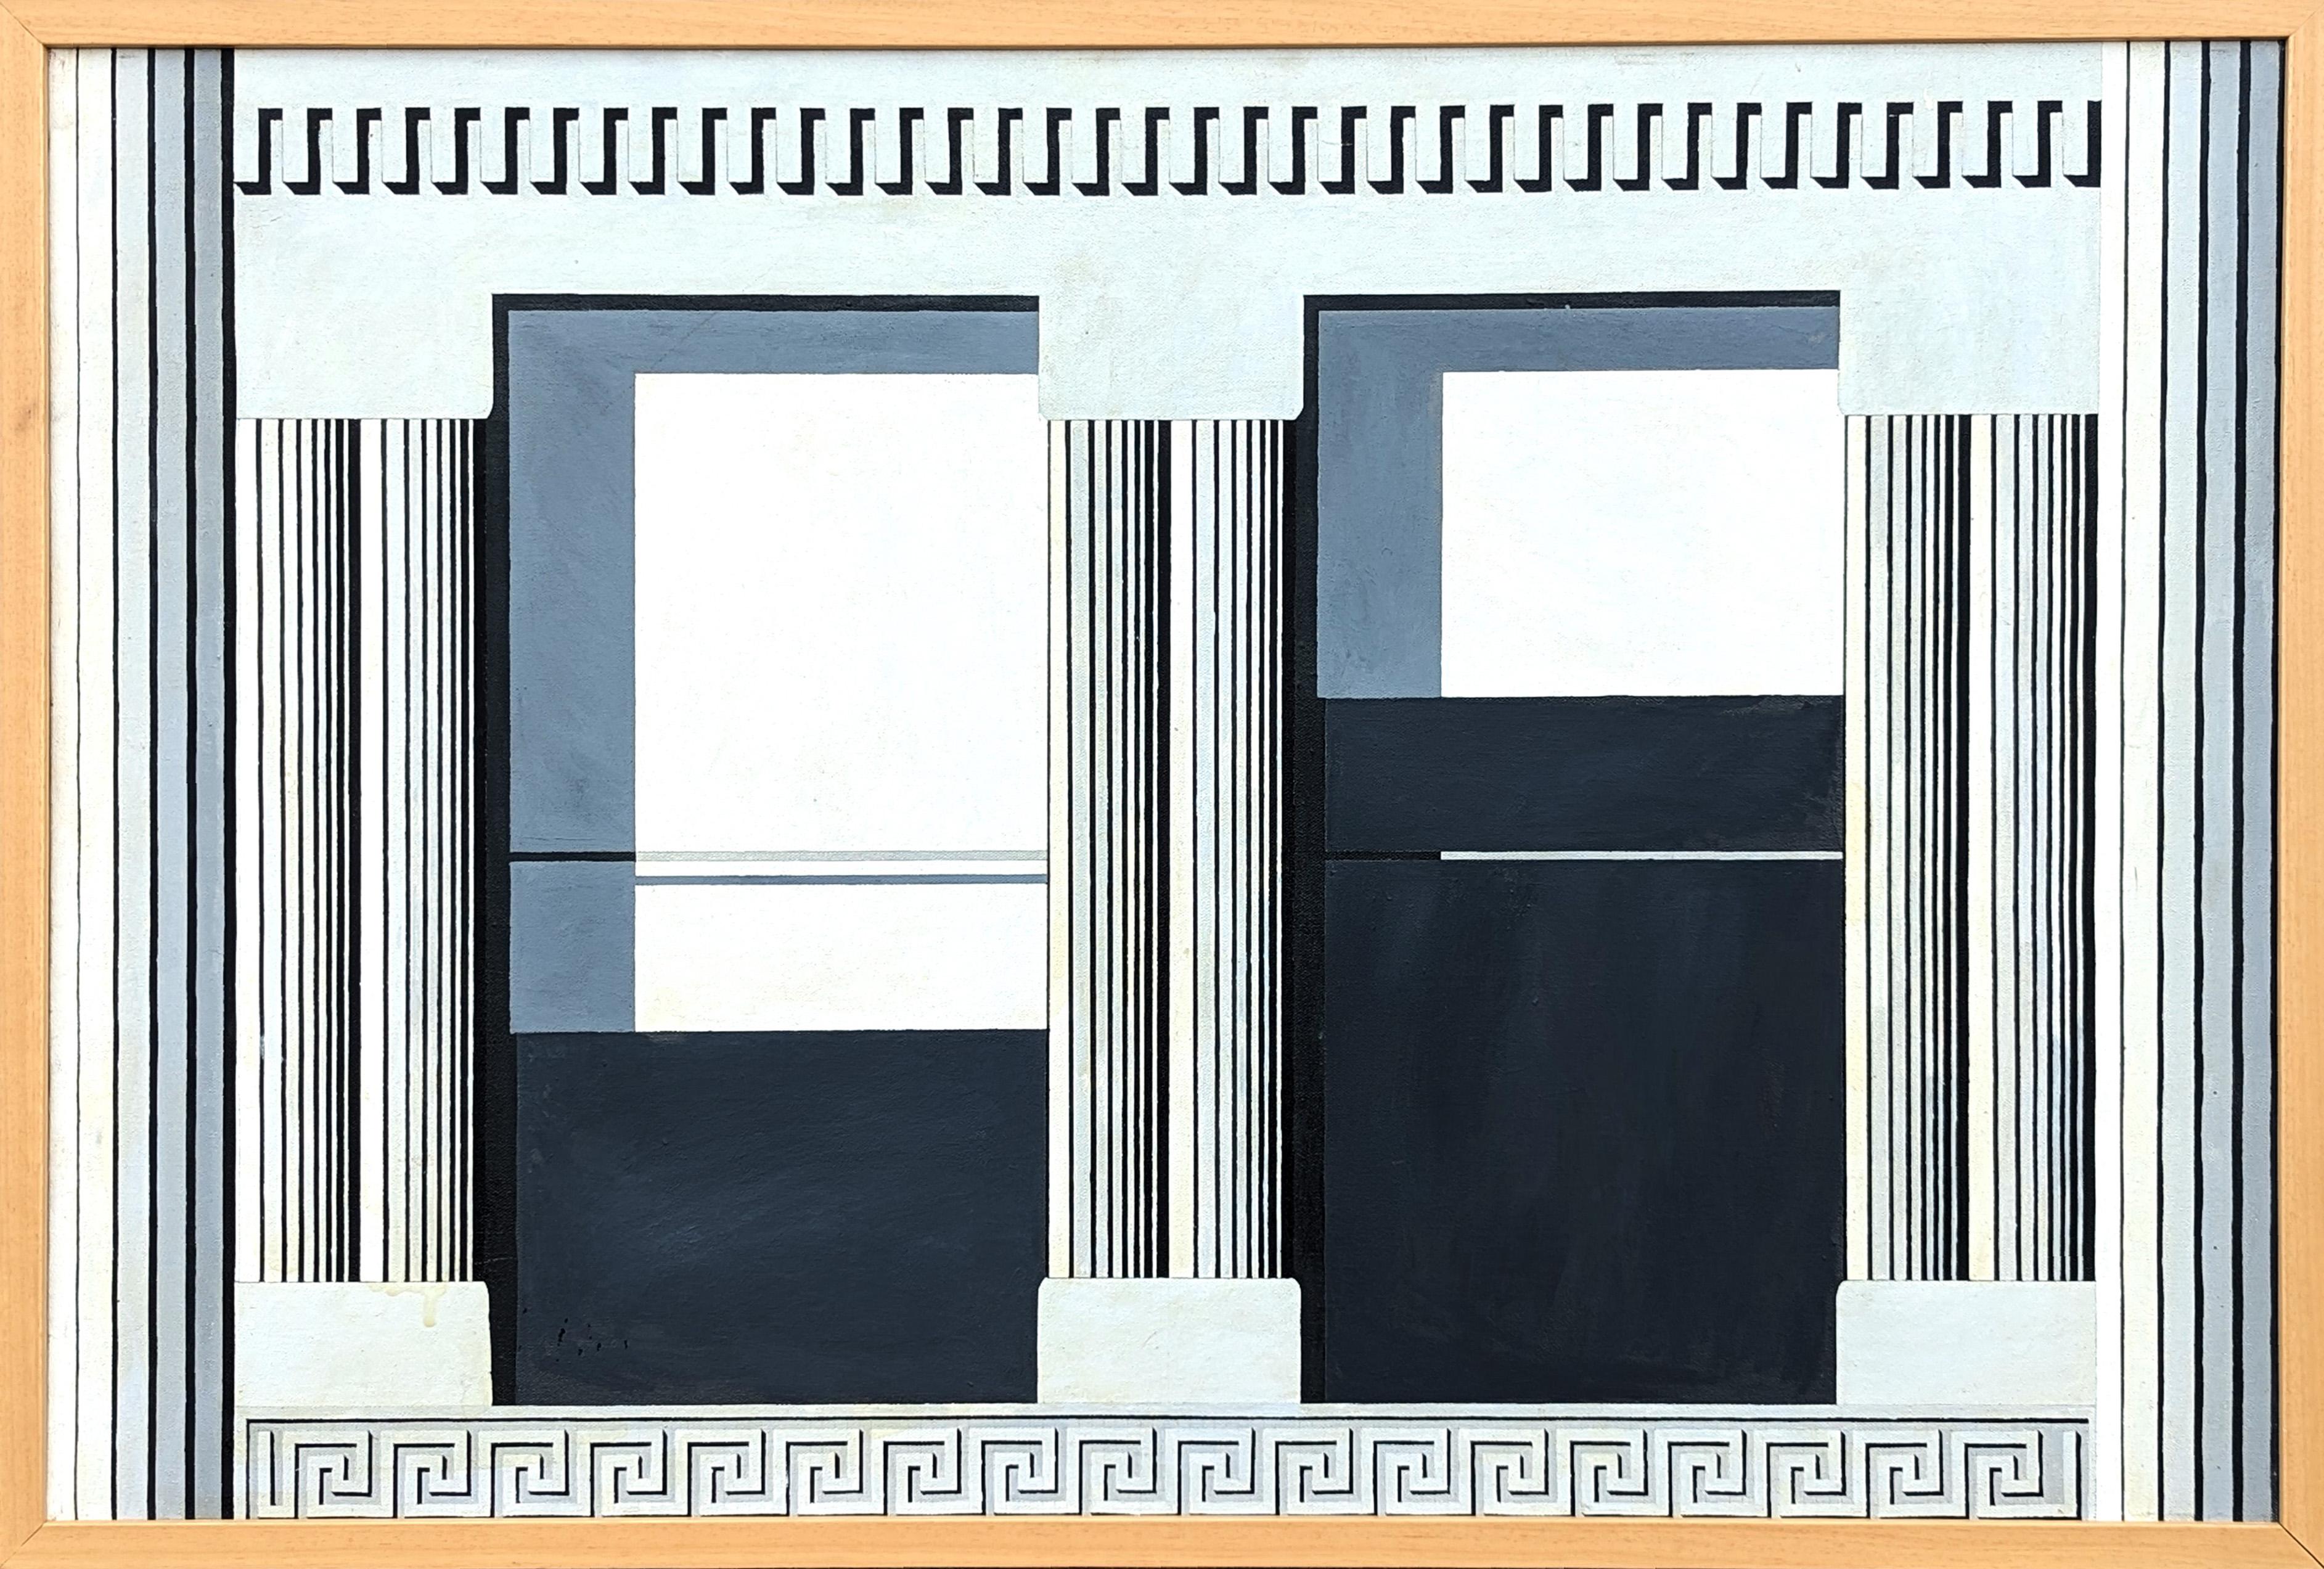 "The Window" peinture moderne d'une façade architecturale dans les tons gris et noirs.